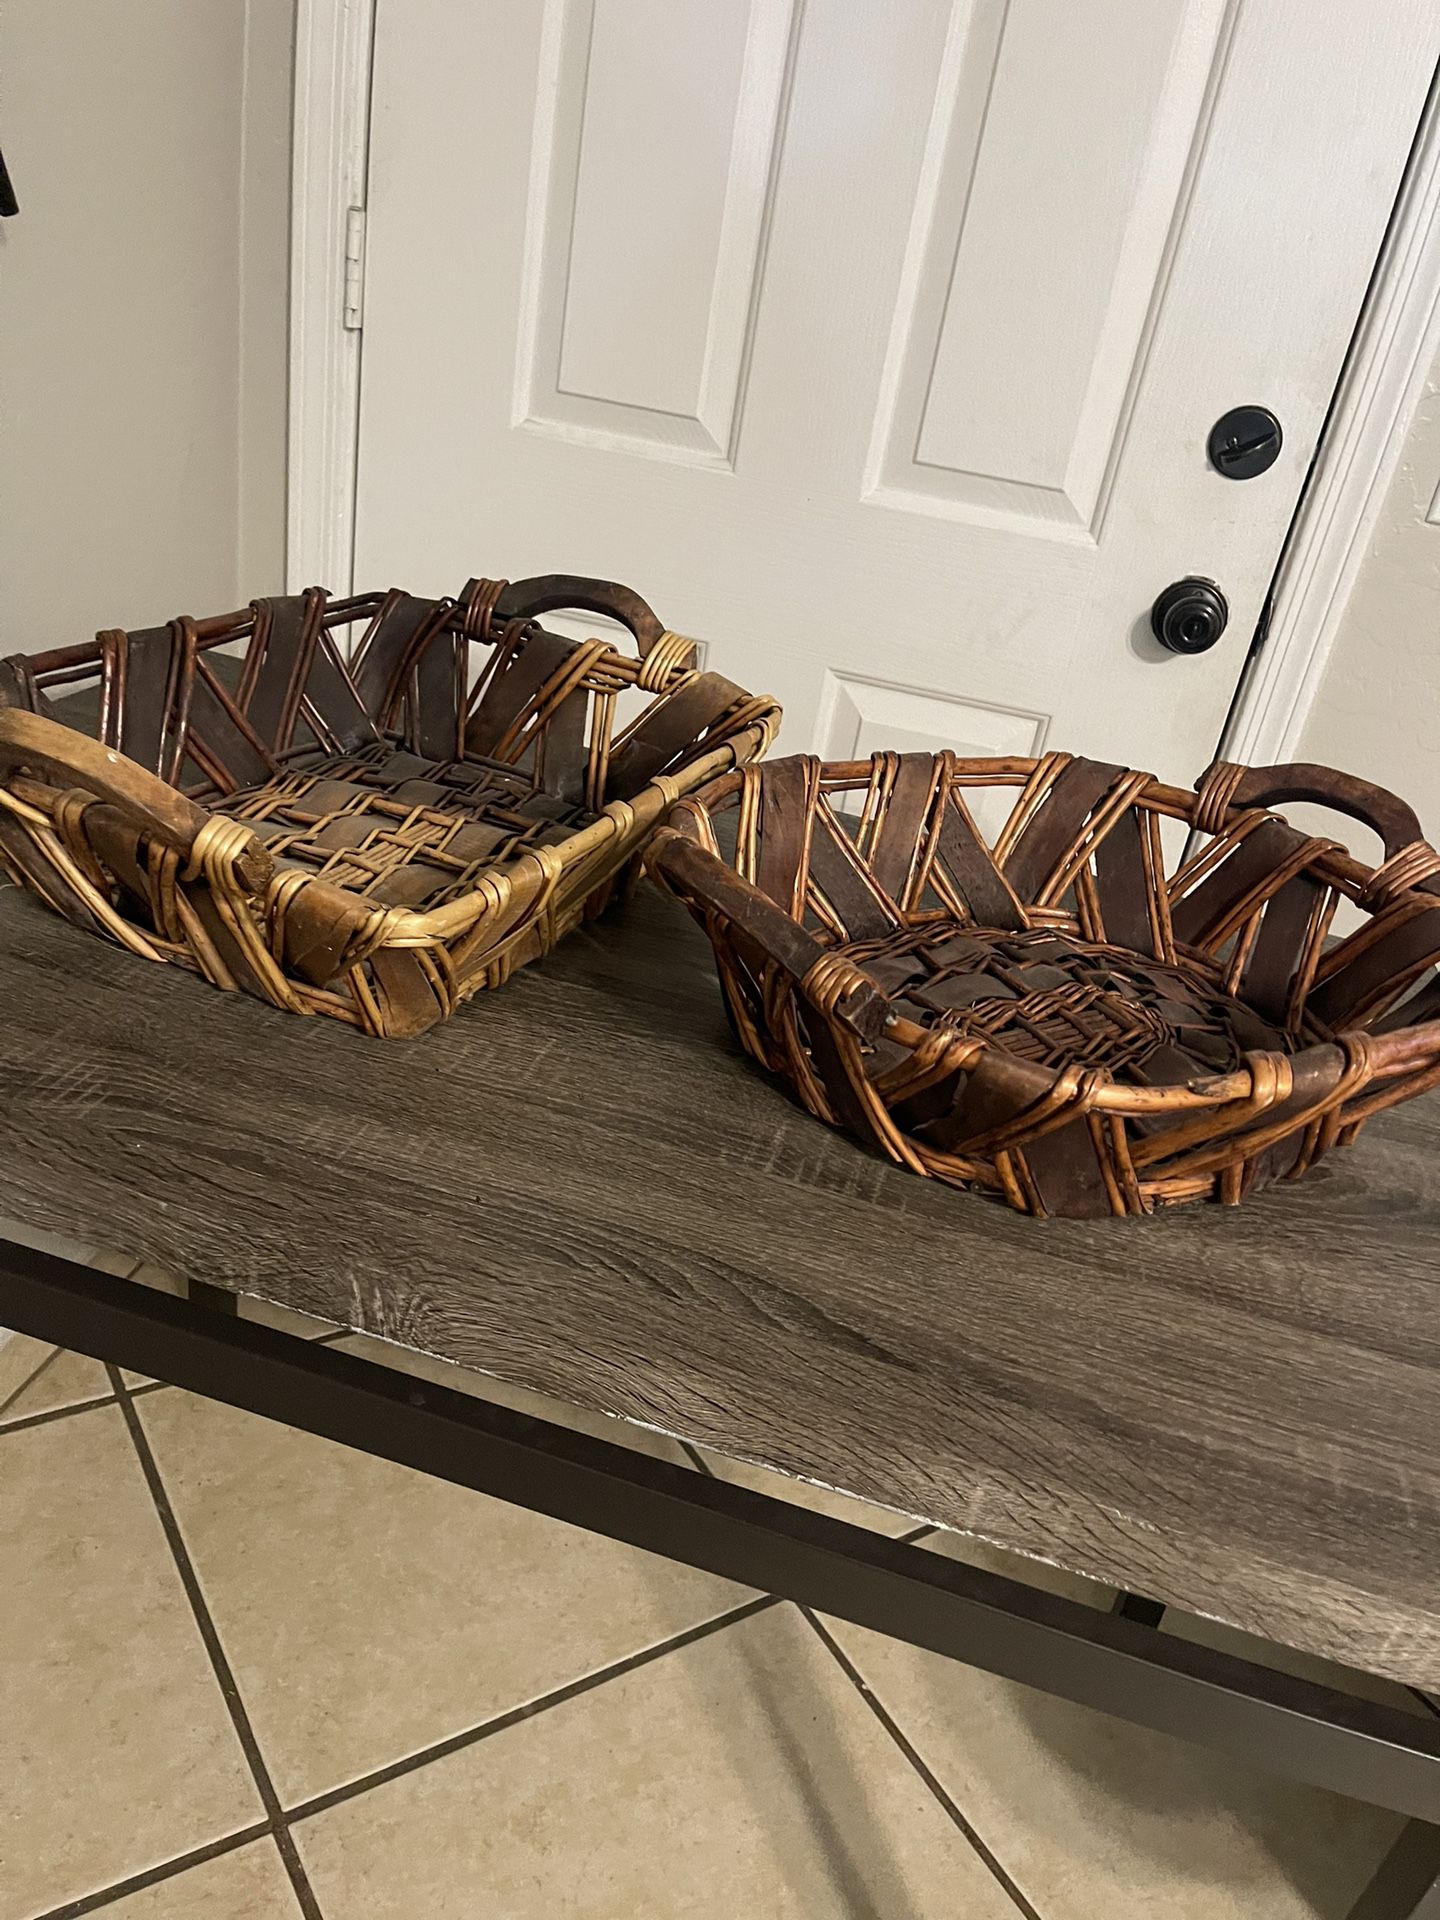 2 Baskets 